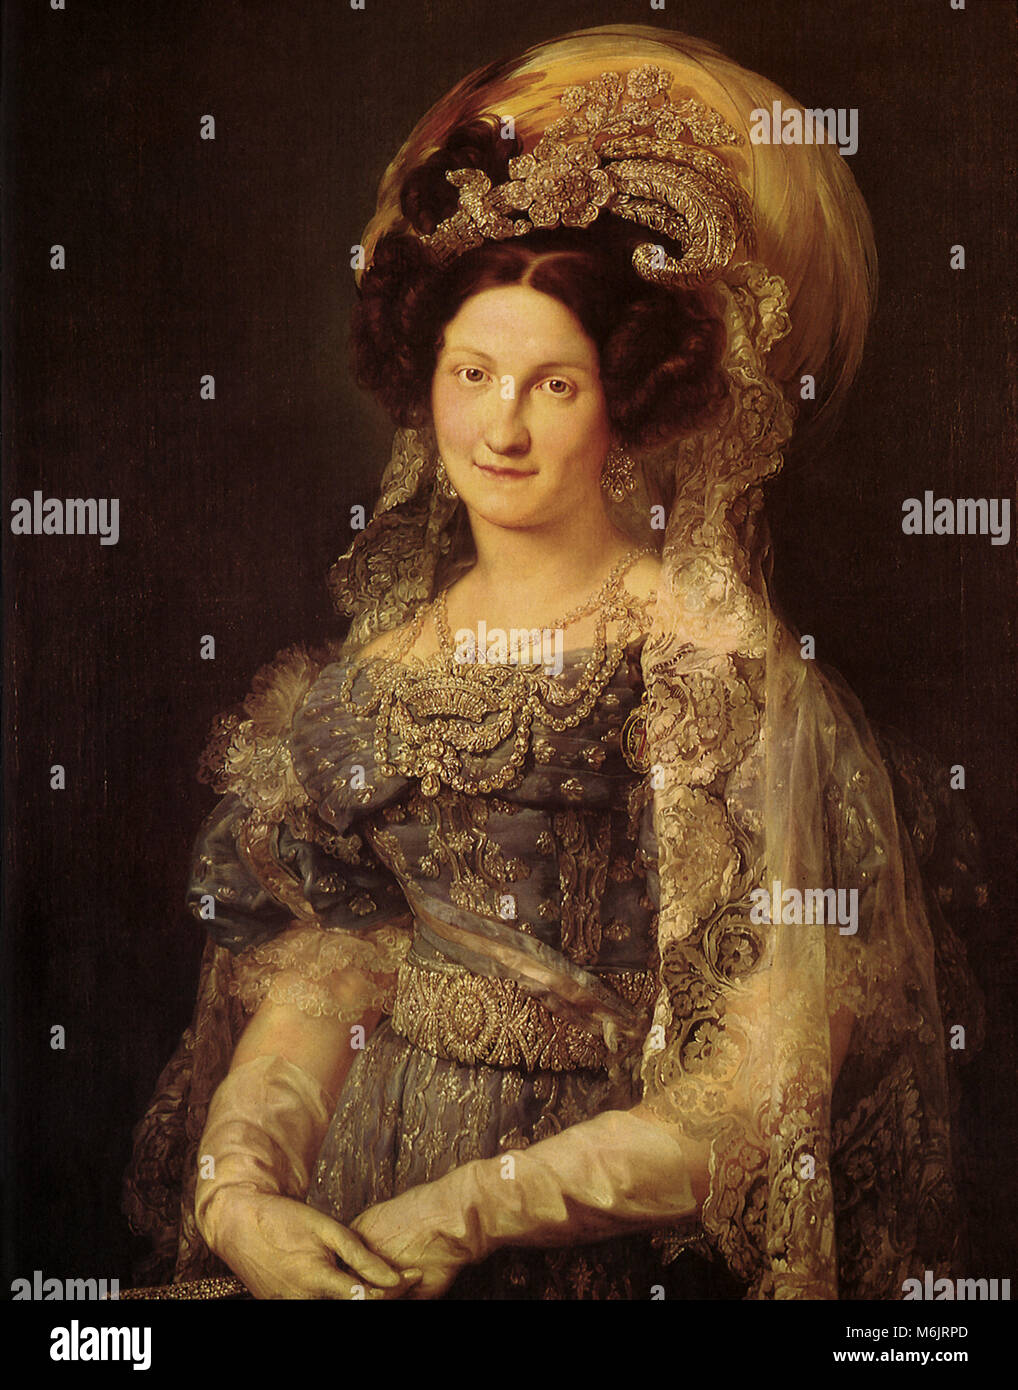 Ritratto della regina Maria-Christina 1830, Portana, Vincent Lopez y, 1830. Foto Stock